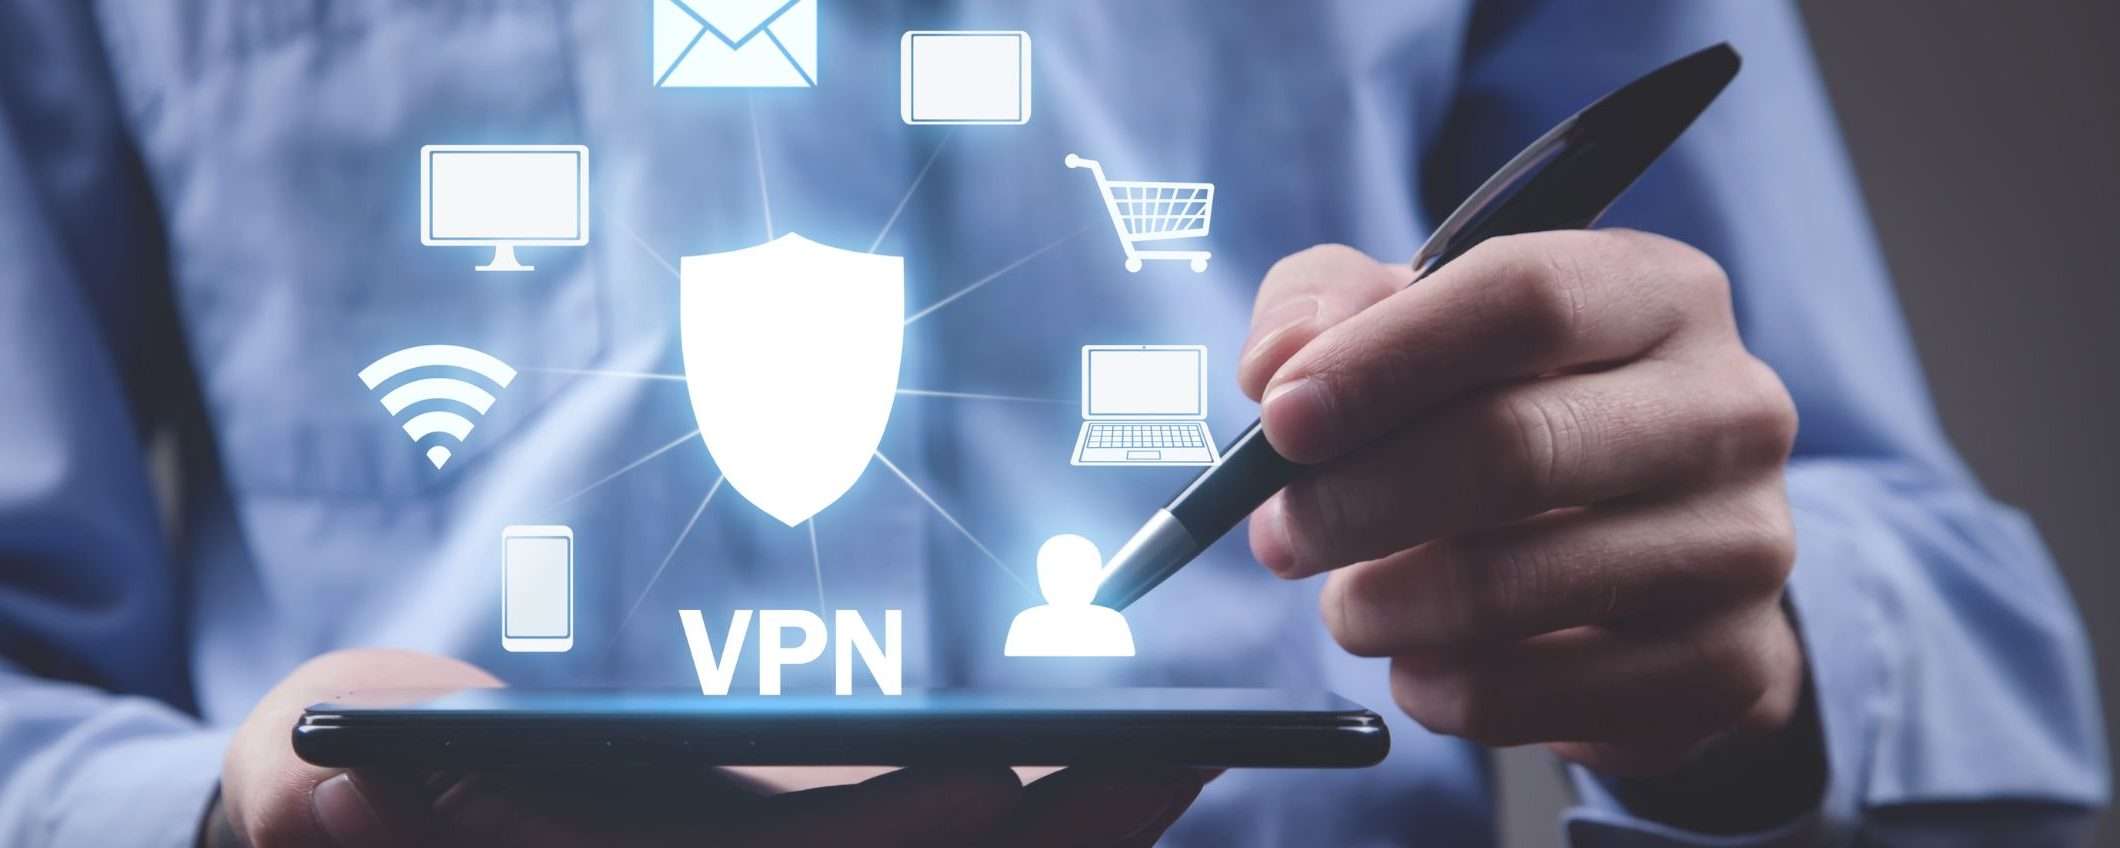 Quando serve una VPN e quale scegliere?